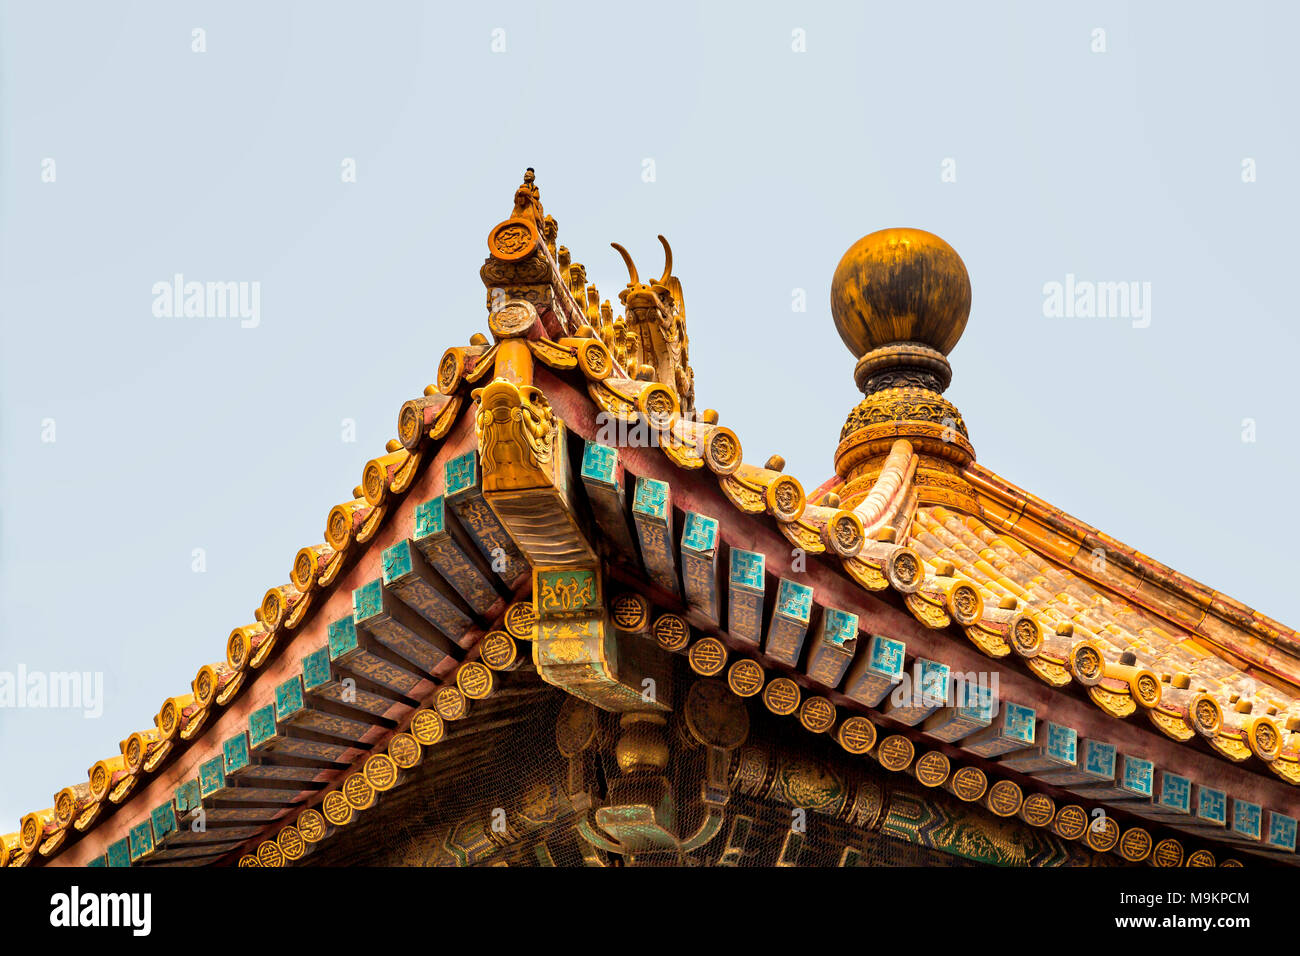 Un toit orné de sculptures avec Ridge, situé dans la Cité Interdite, Pékin, Chine Banque D'Images